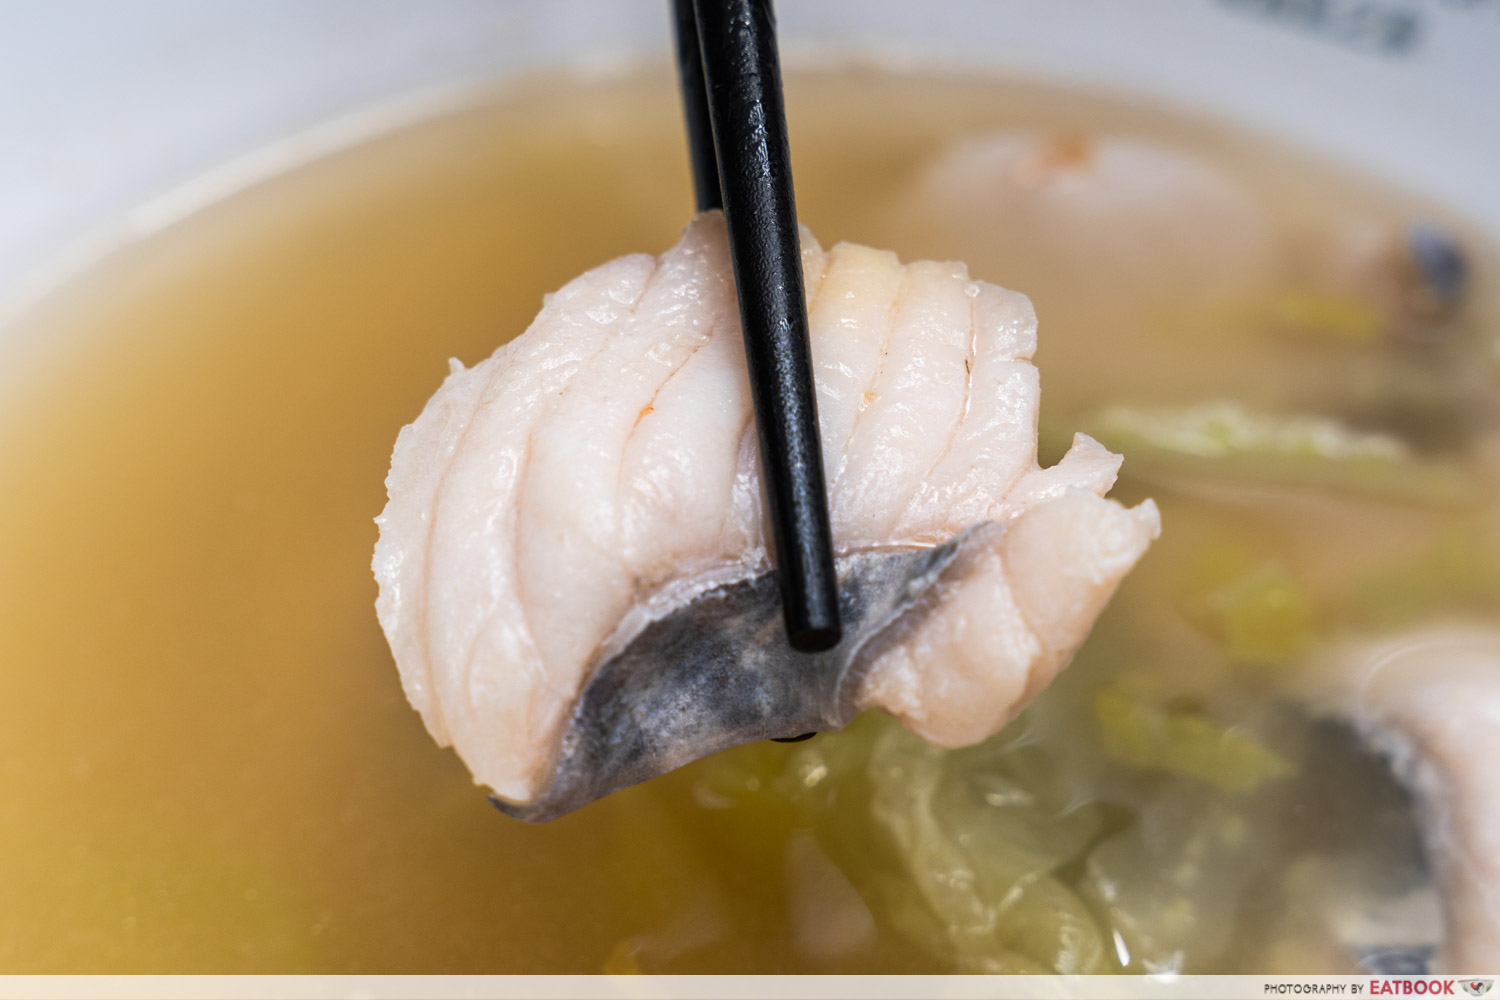 jun-yuan-house-of-fish-sliced-fish-close-up